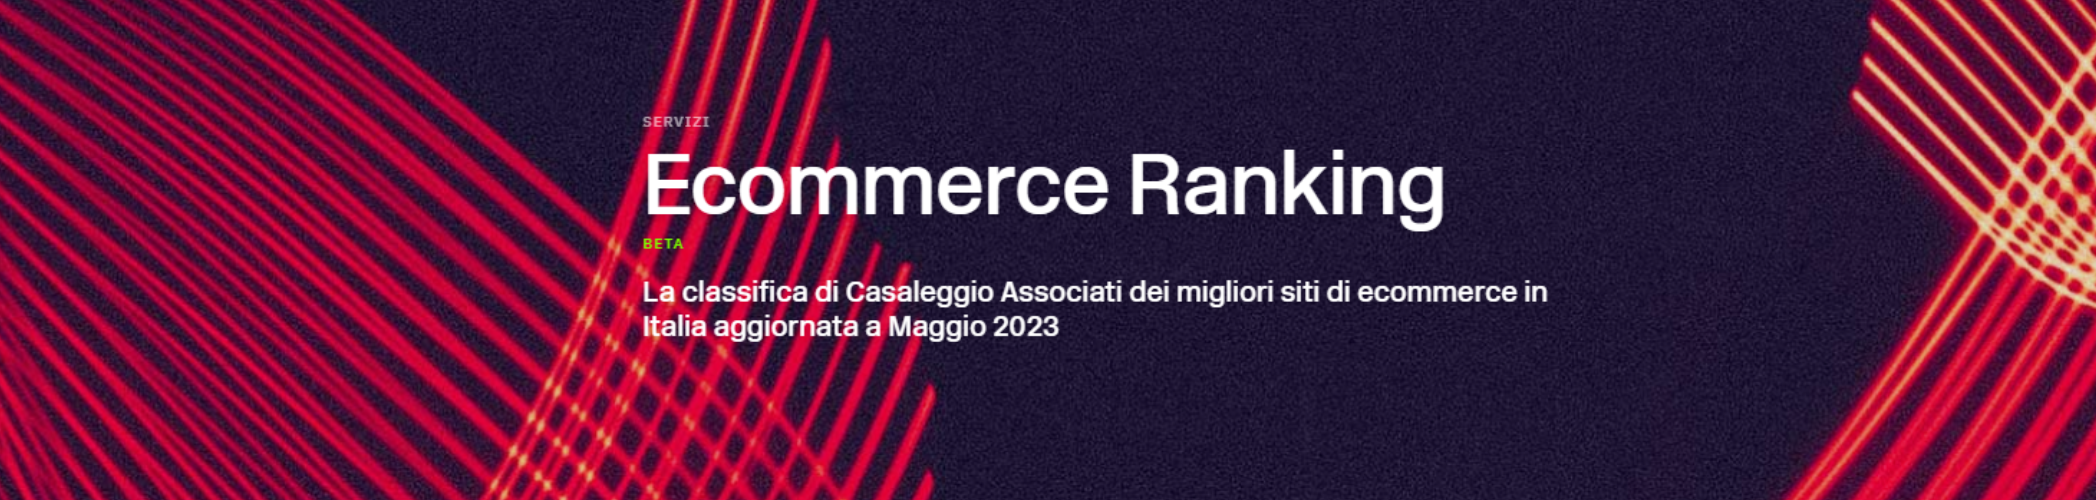 Ecommerce ranking